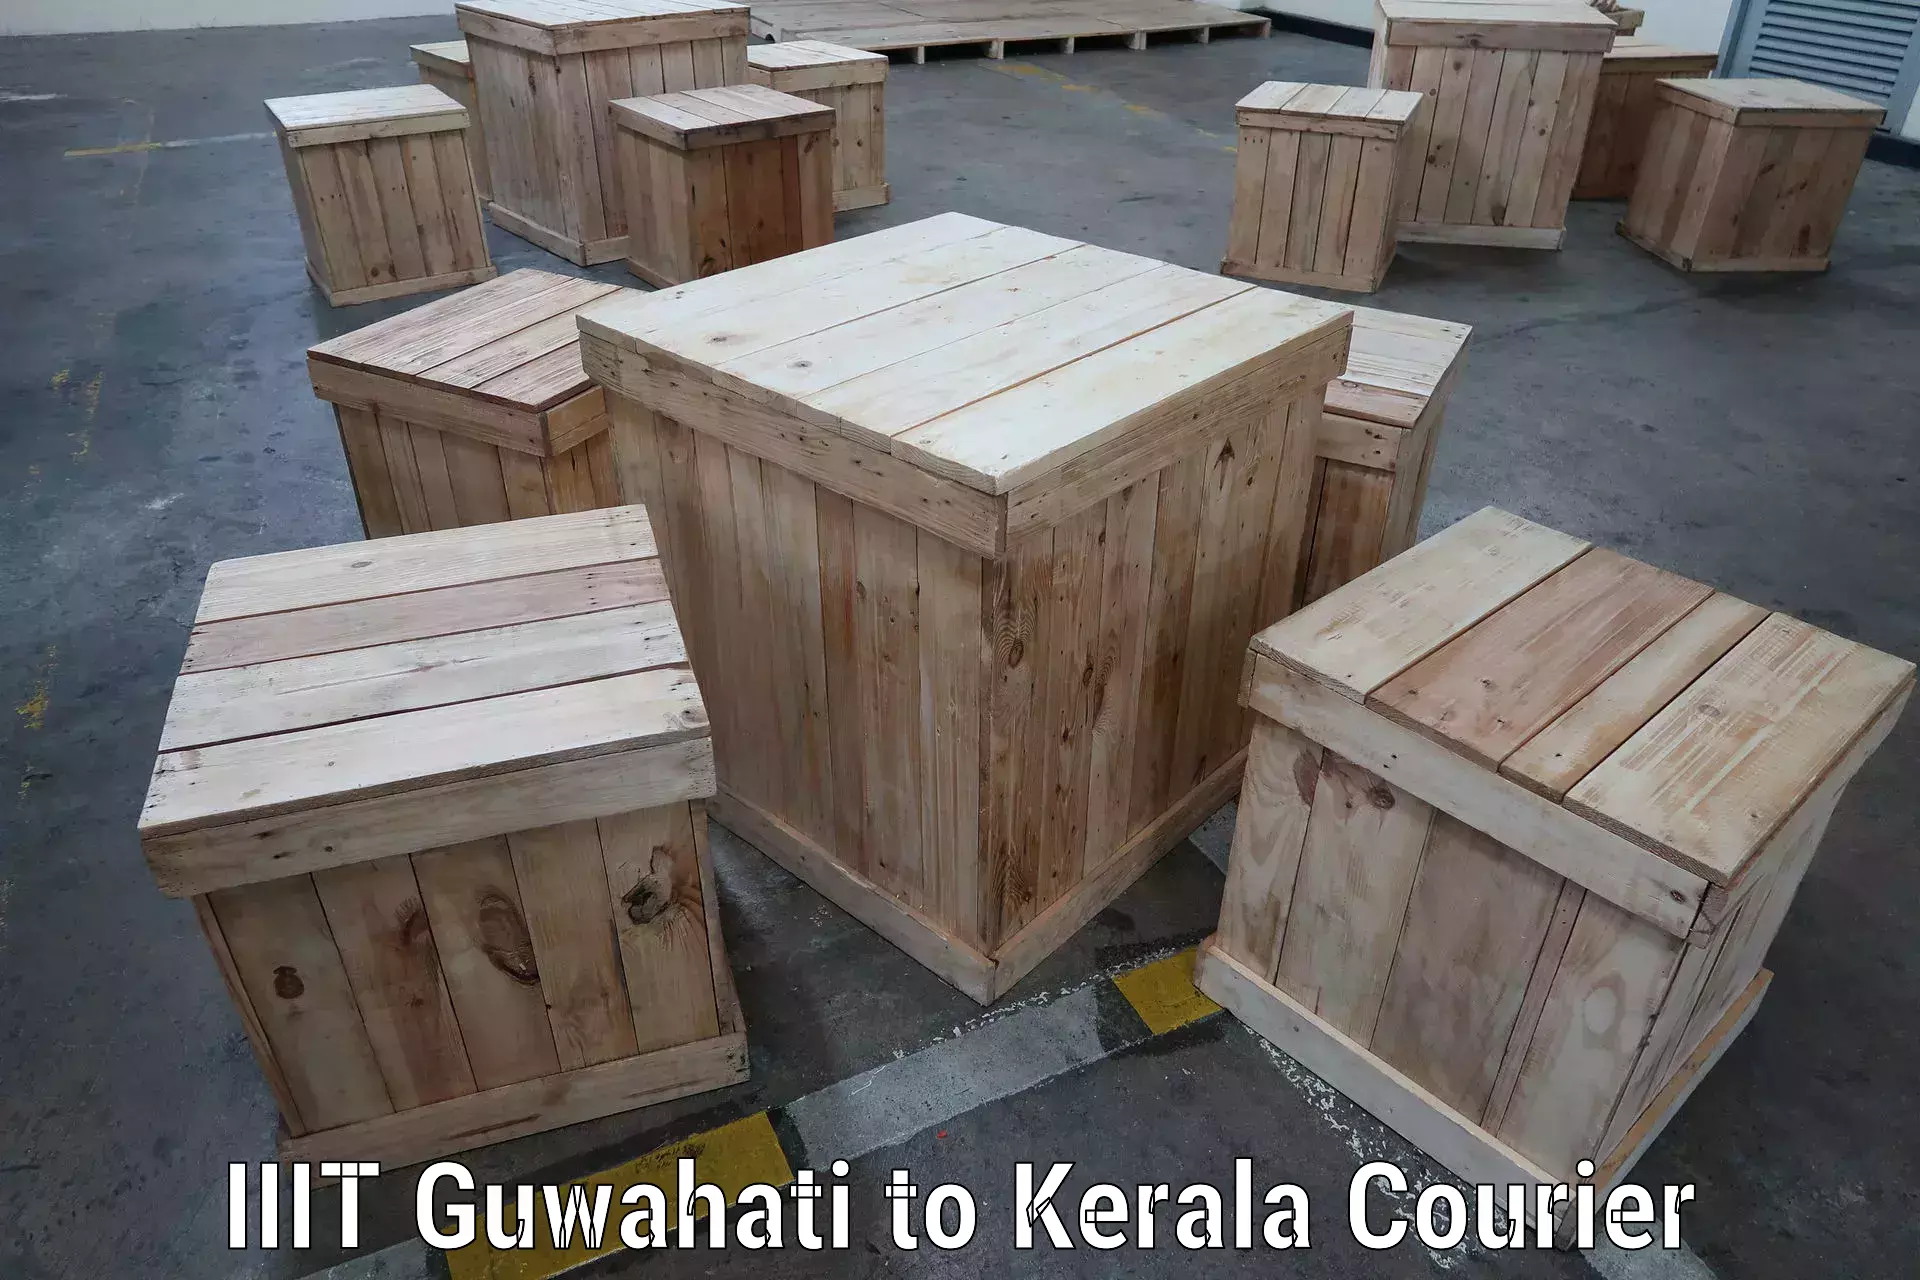 Door-to-door shipment IIIT Guwahati to Thrissur